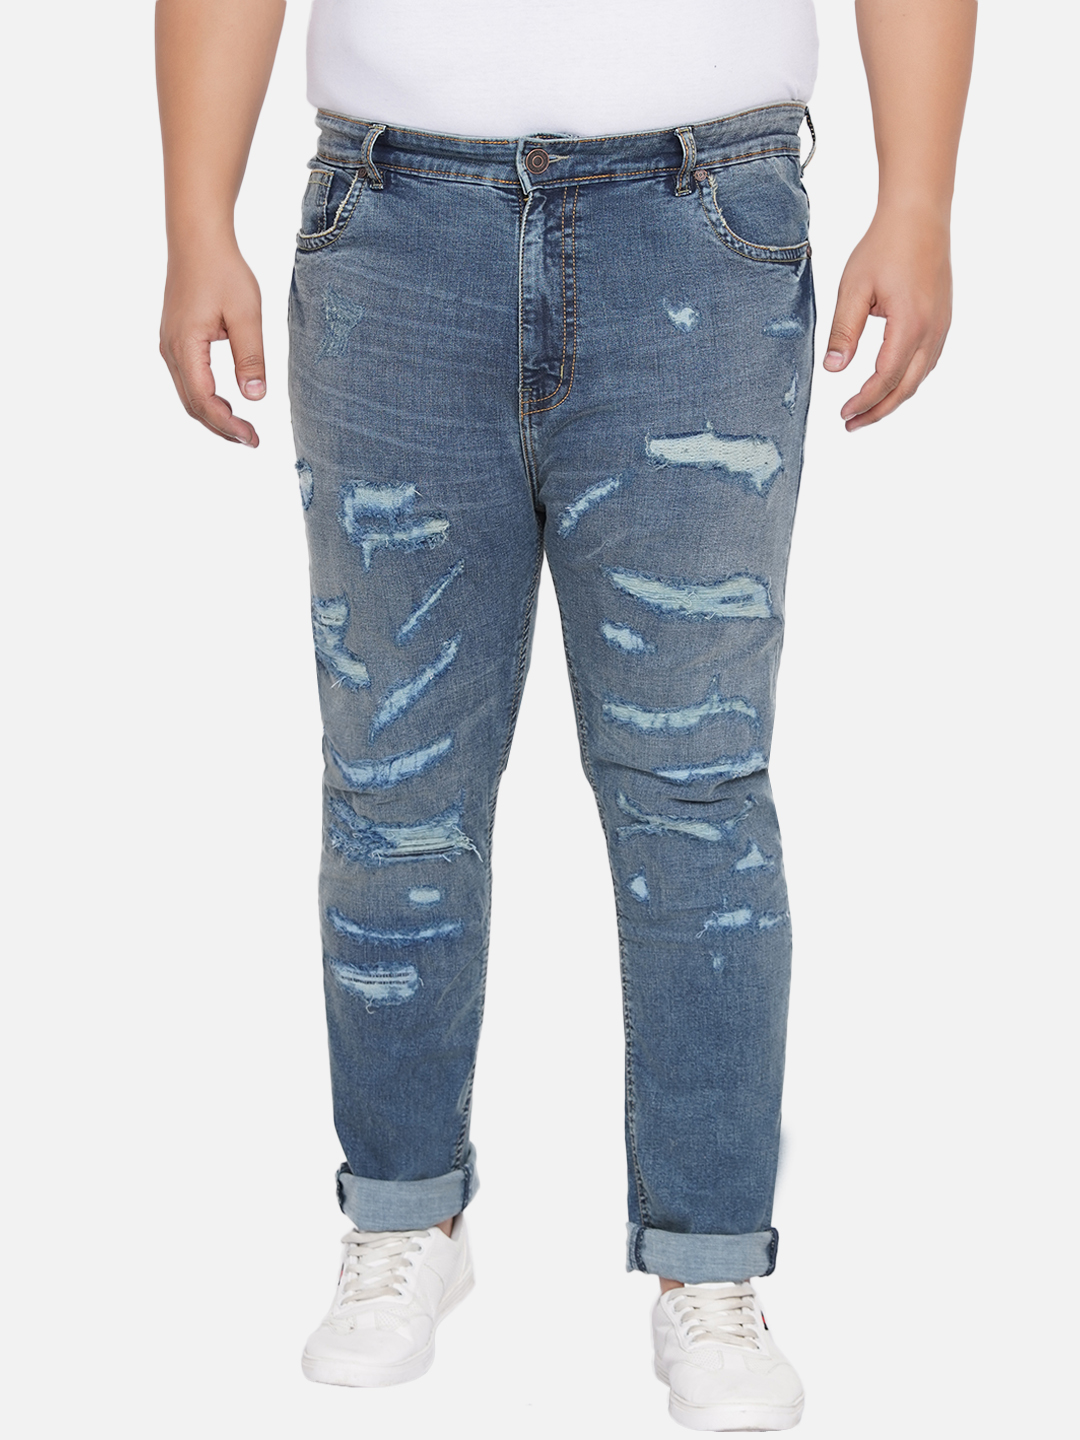 bottomwear/jeans/JPJ12201/jpj12201-6.jpg